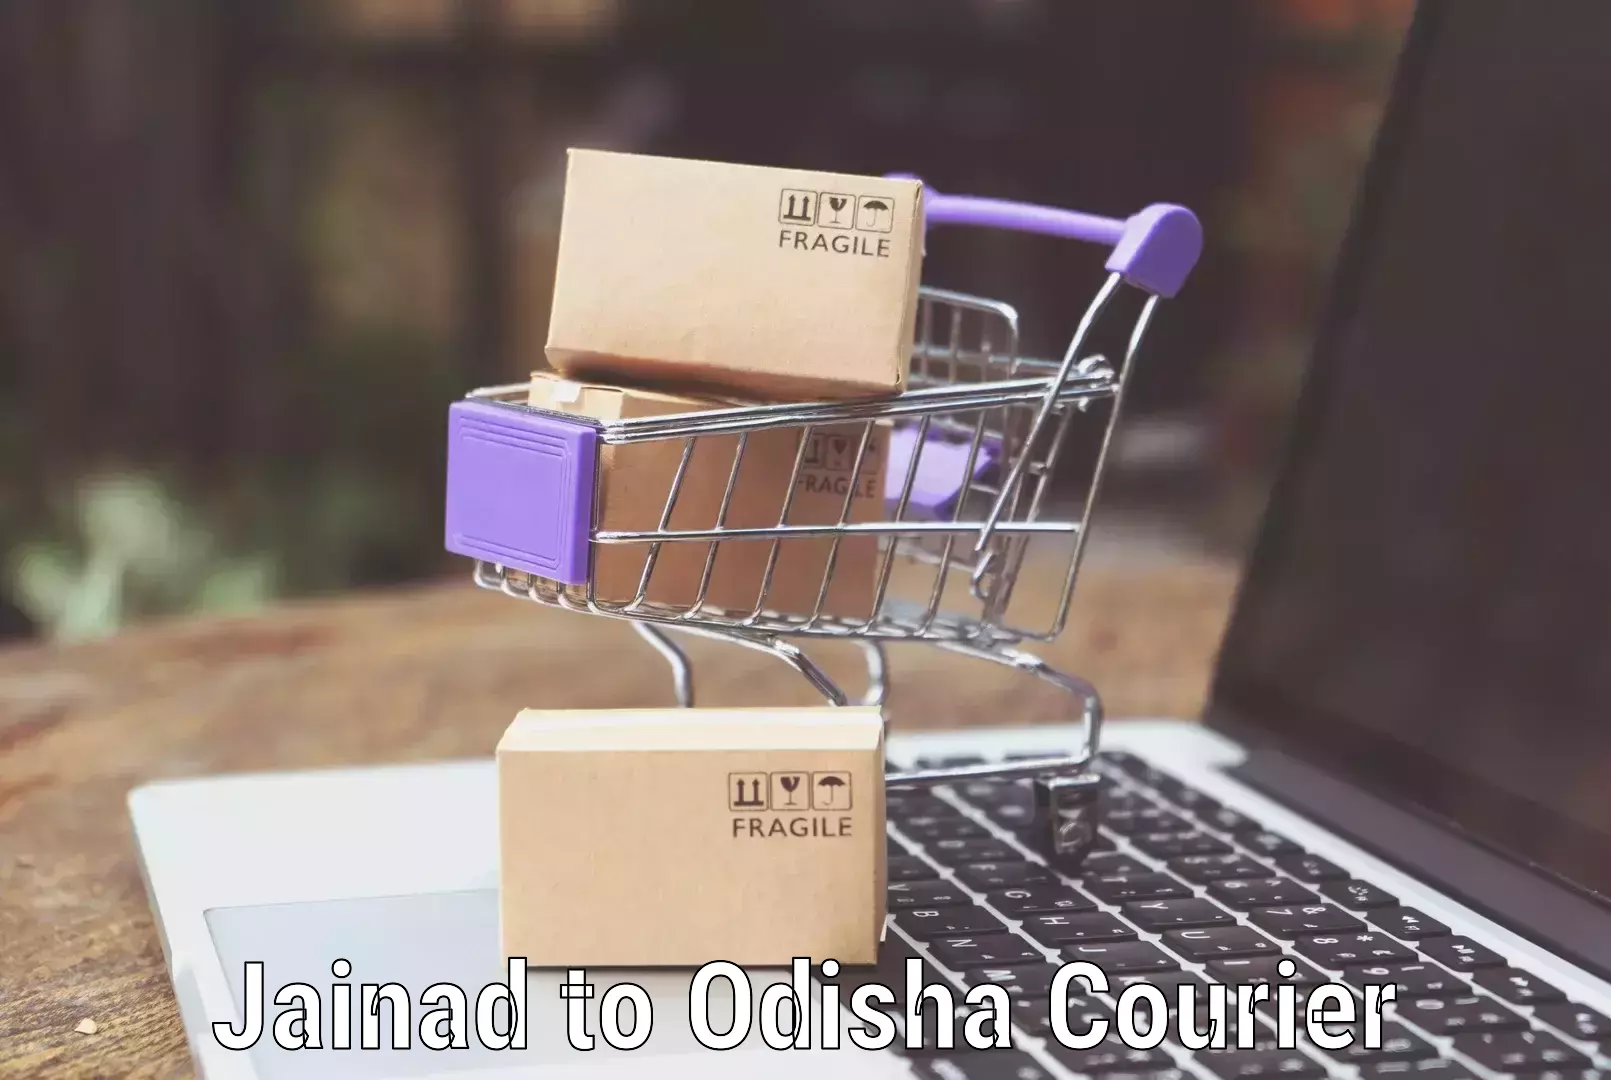 Hassle-free luggage shipping Jainad to Odisha